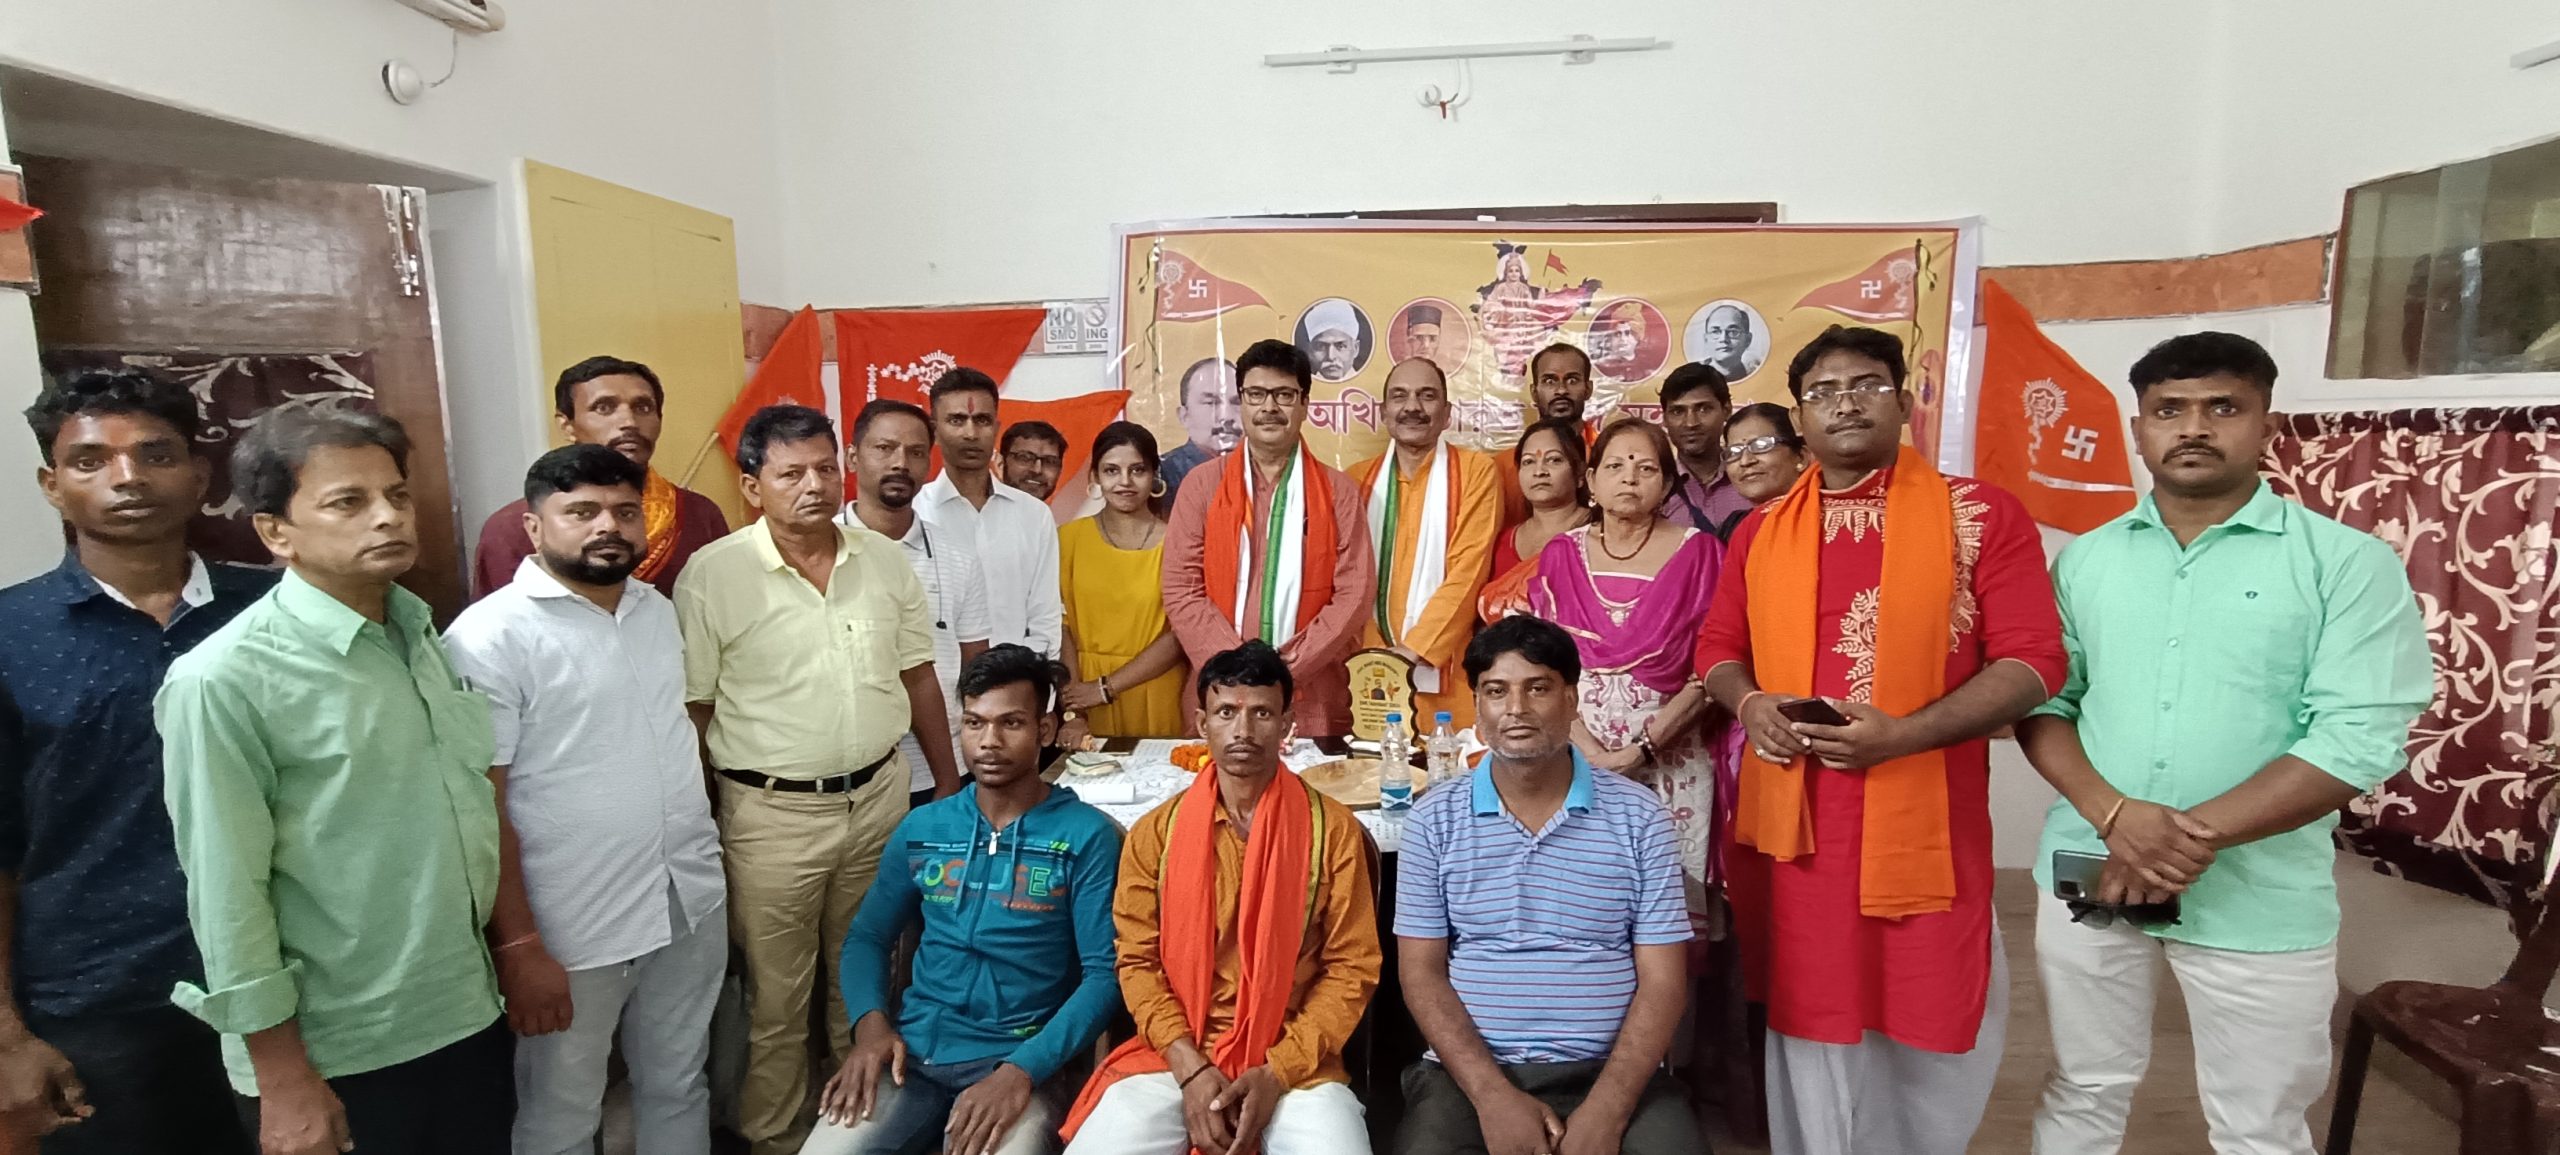 Sri Yashvant Sinha Rashtriya Maha Mantri of Akhil Bharat Hindu Maha Sabha meets West Bengal Team at Kolkata